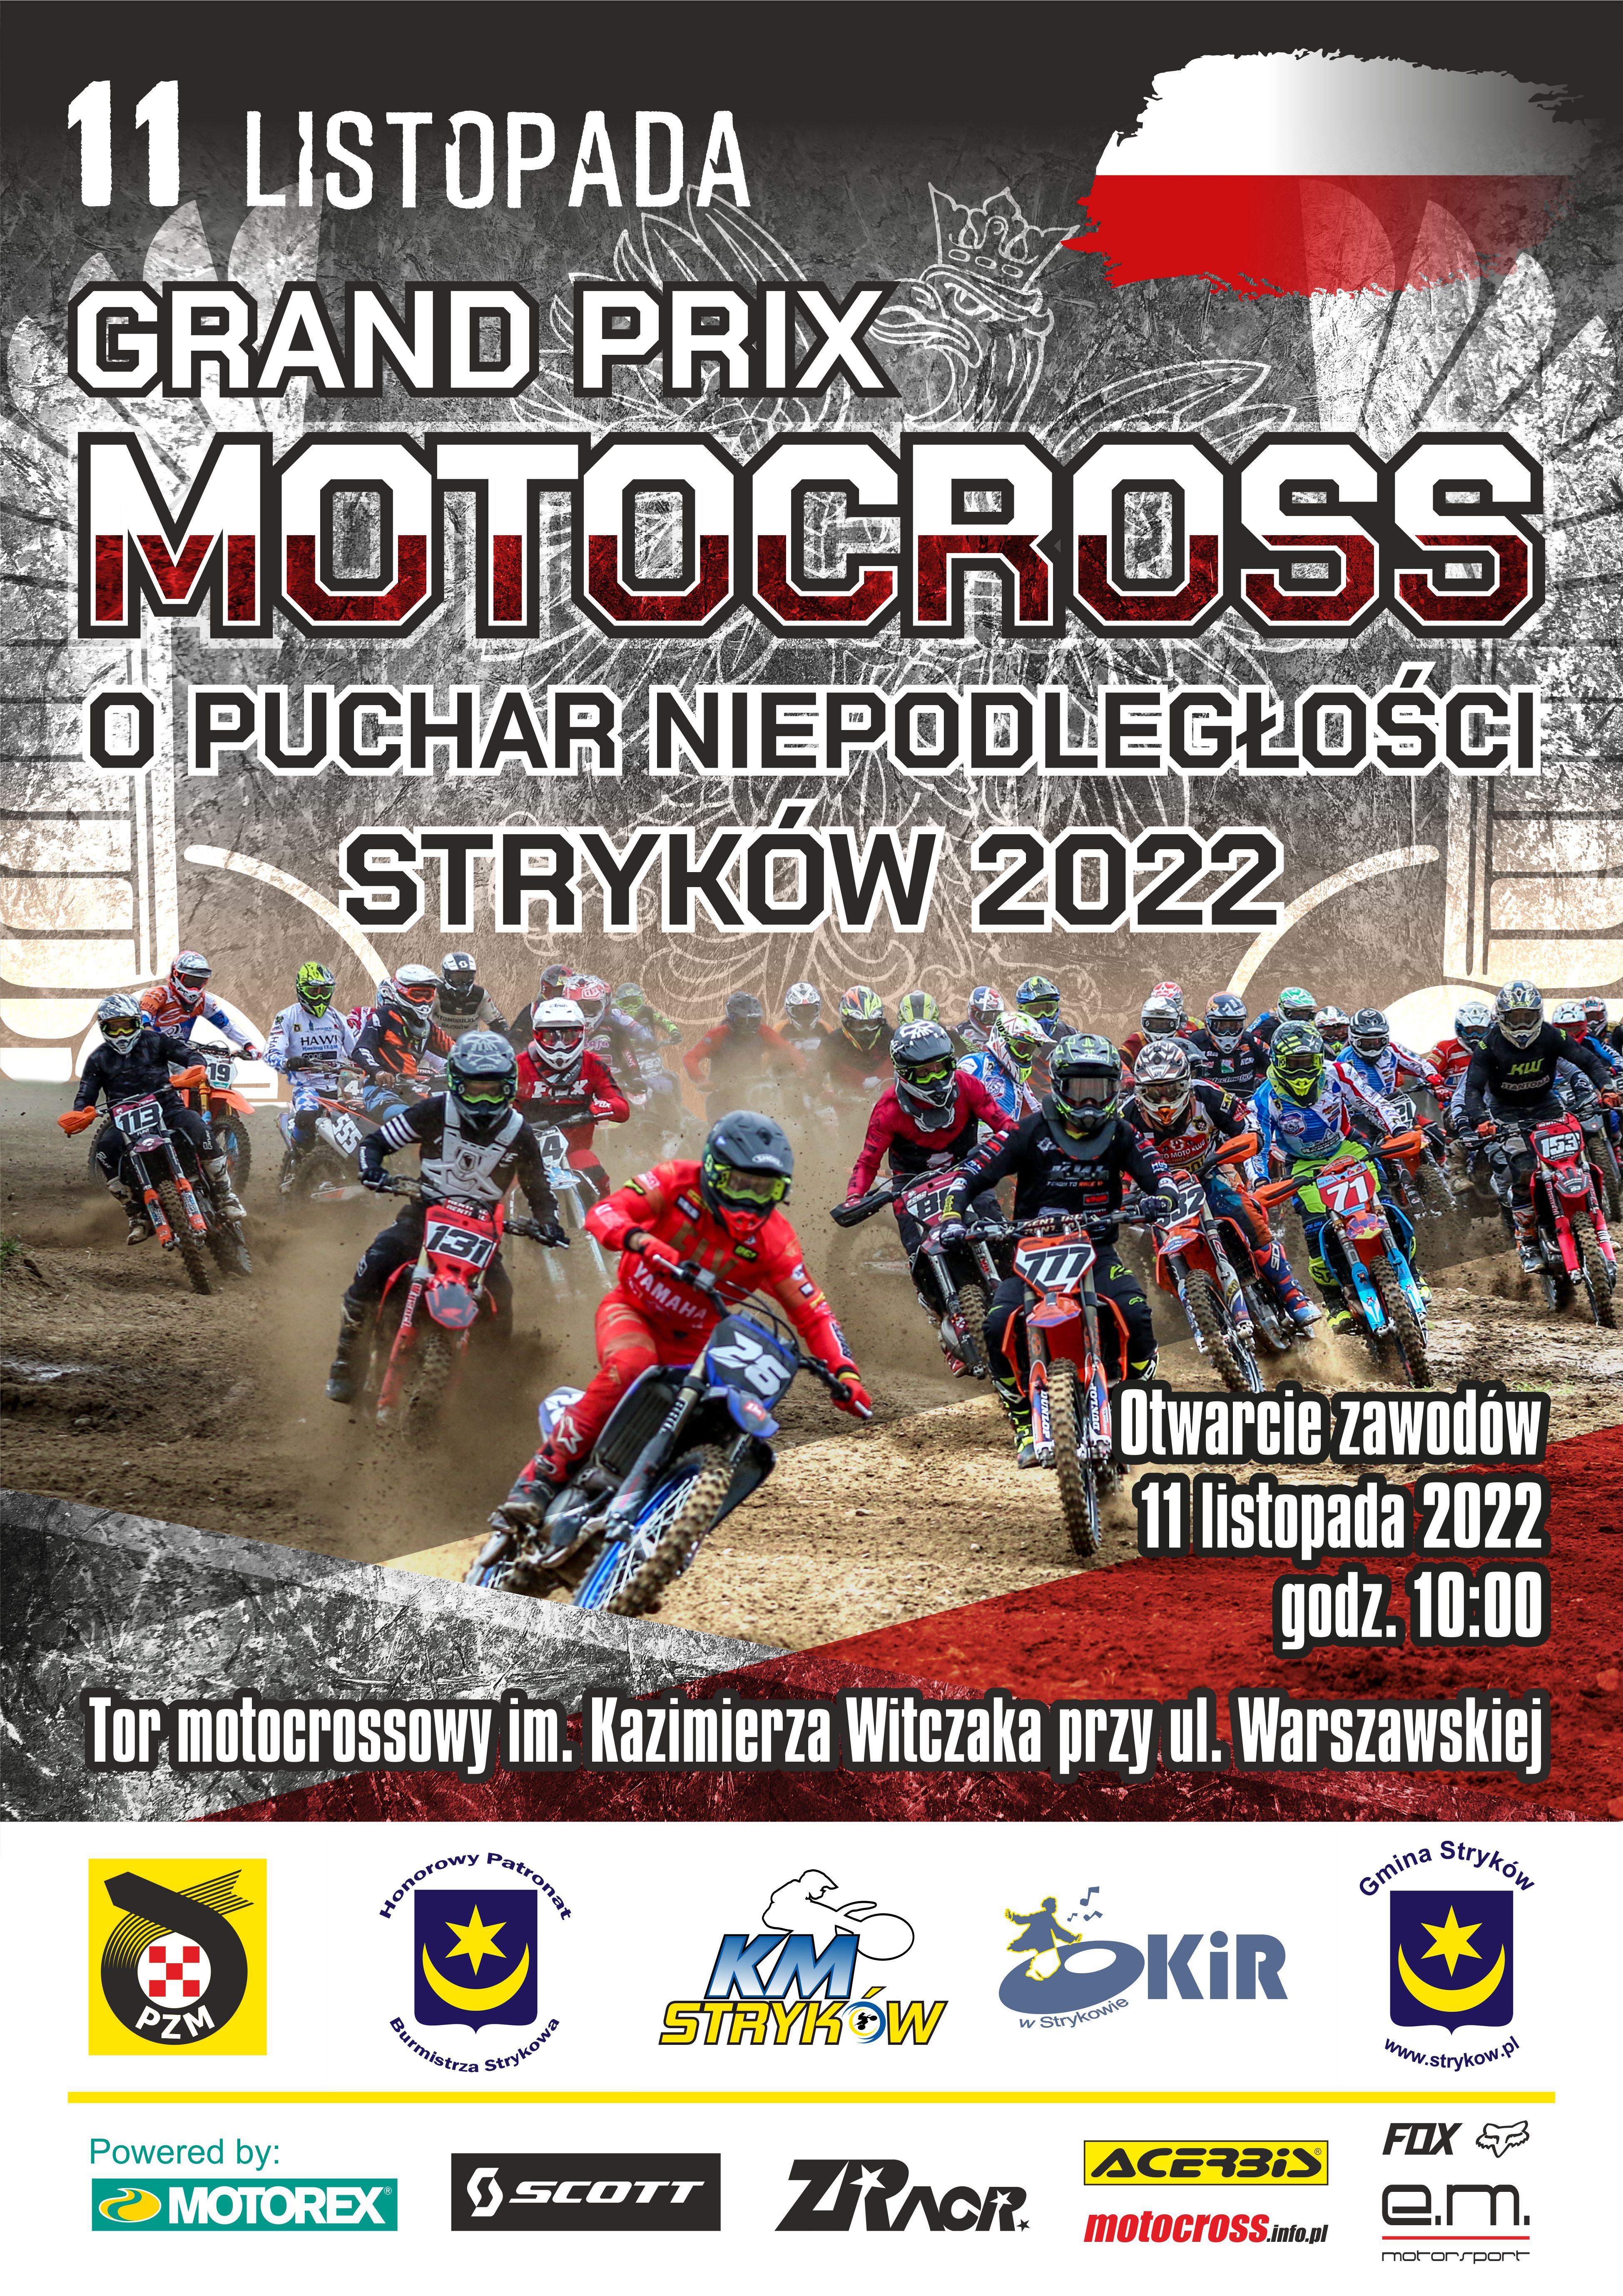 Motocrossowe Grand Prix o Puchar Niepodległości w Strykowie - zapraszamy